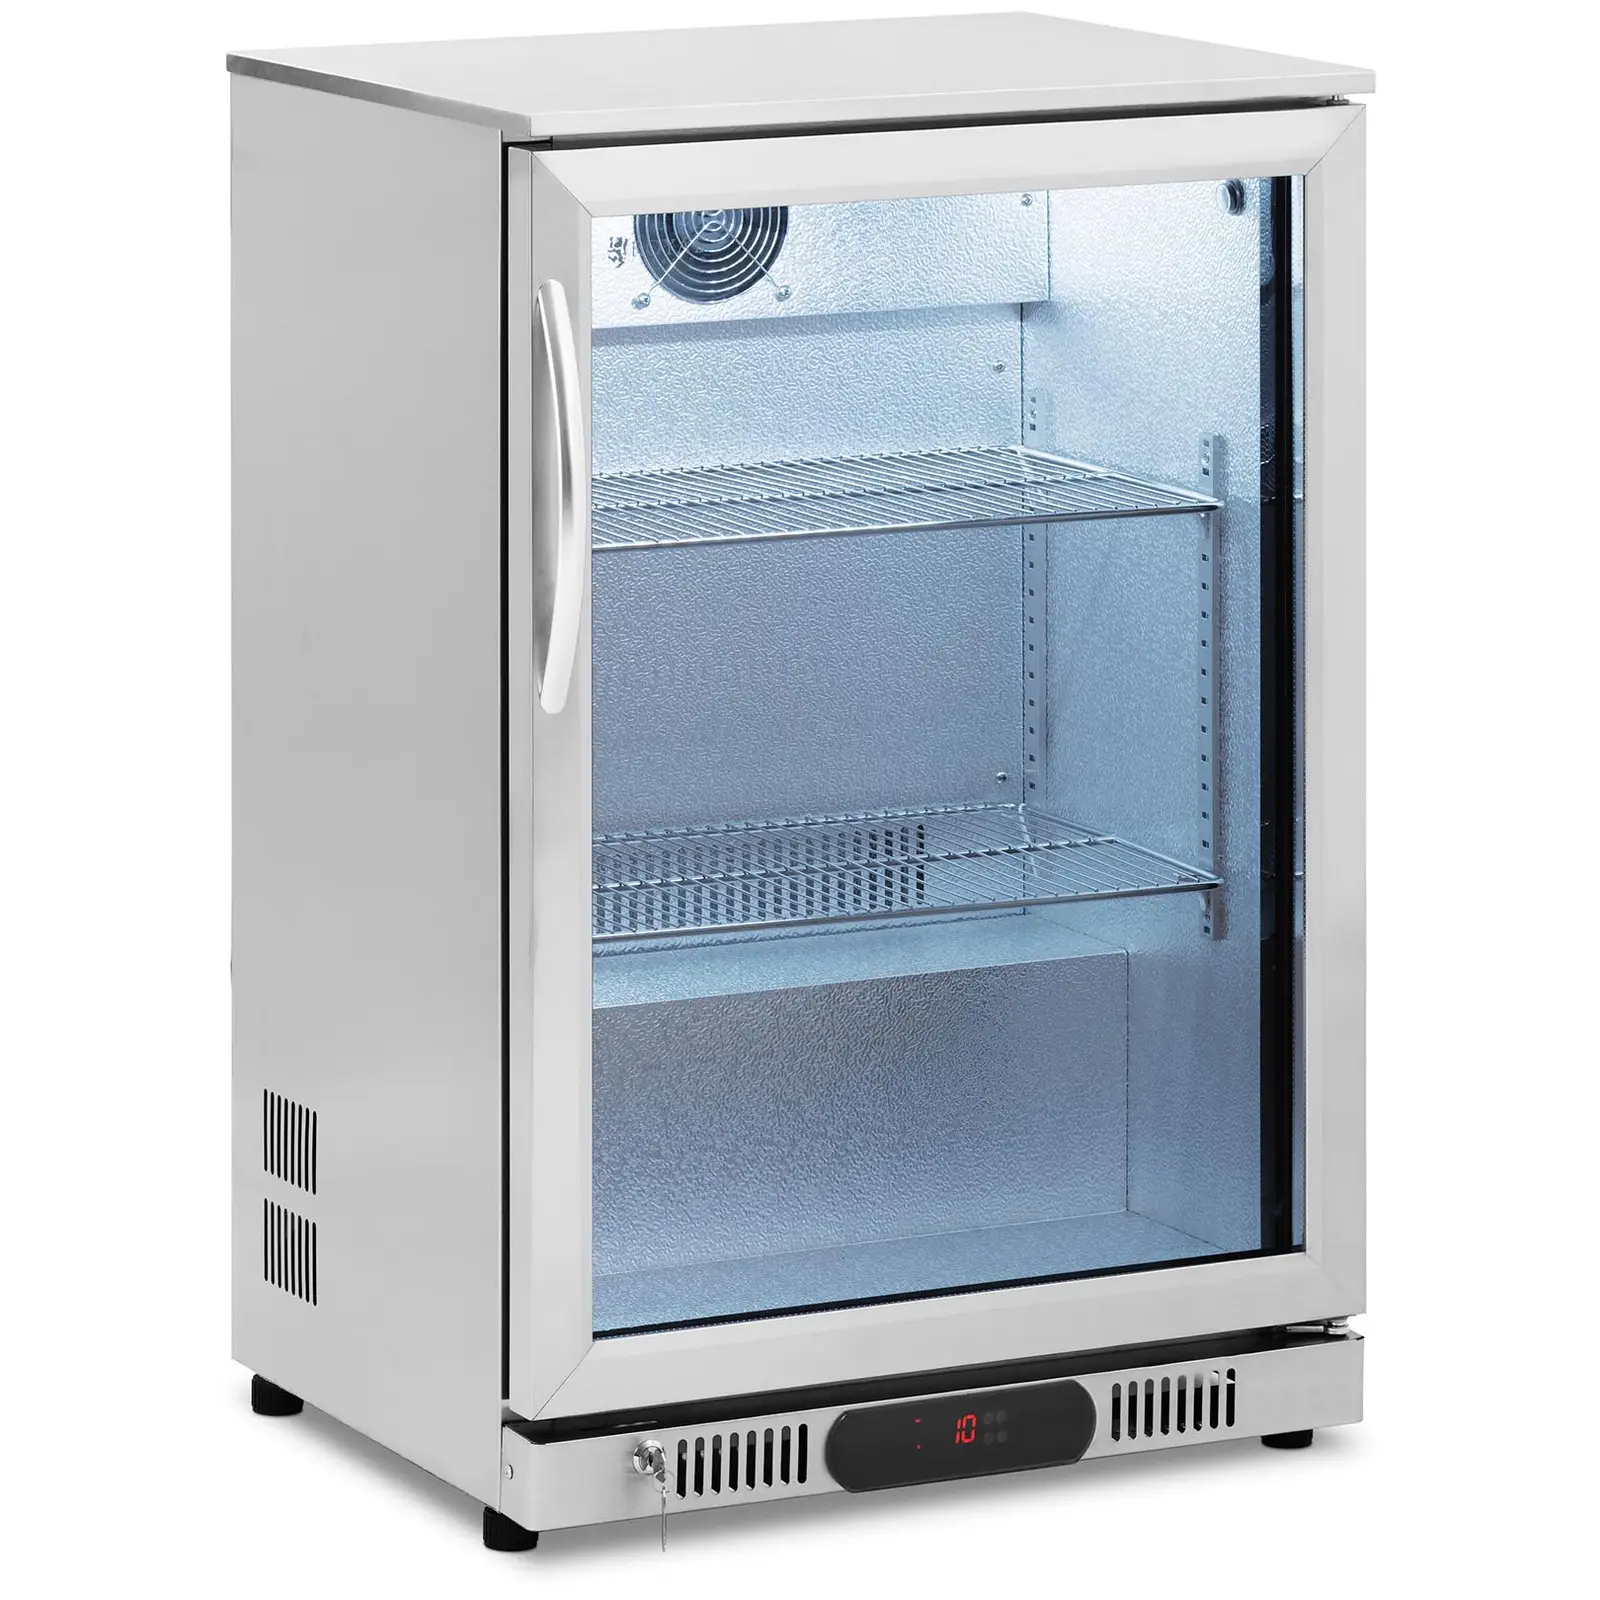 Produtos recondicionados Arca refrigeradora - 138 l - Royal Catering - aço inoxidável